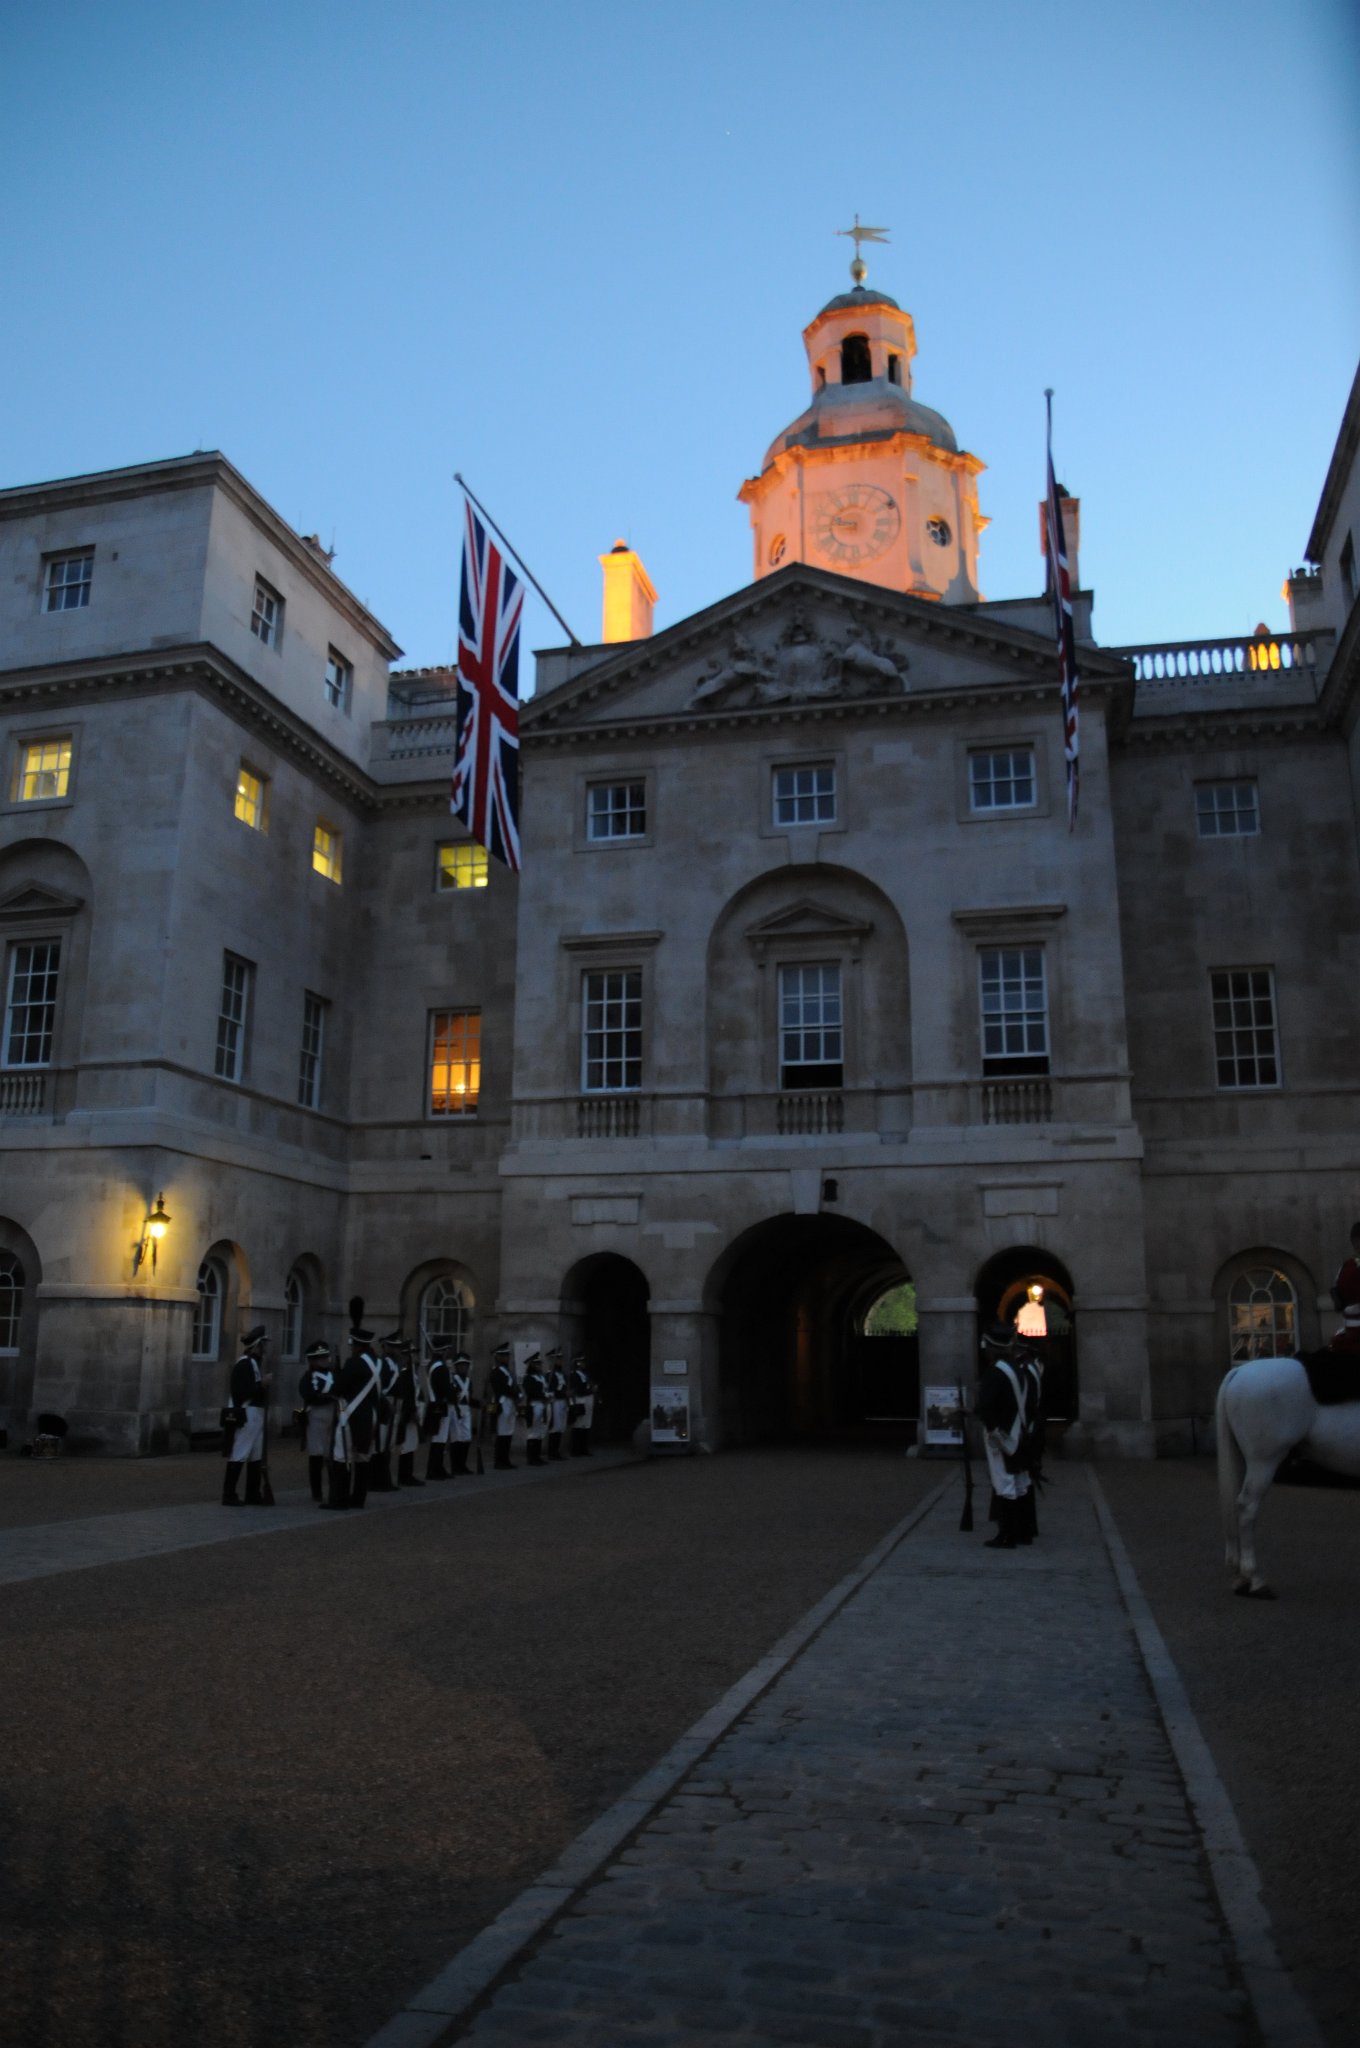 DSC_3534.JPG - Ministerstvo obrany a původníh velitelství Britské armády (budova Horse Guards).